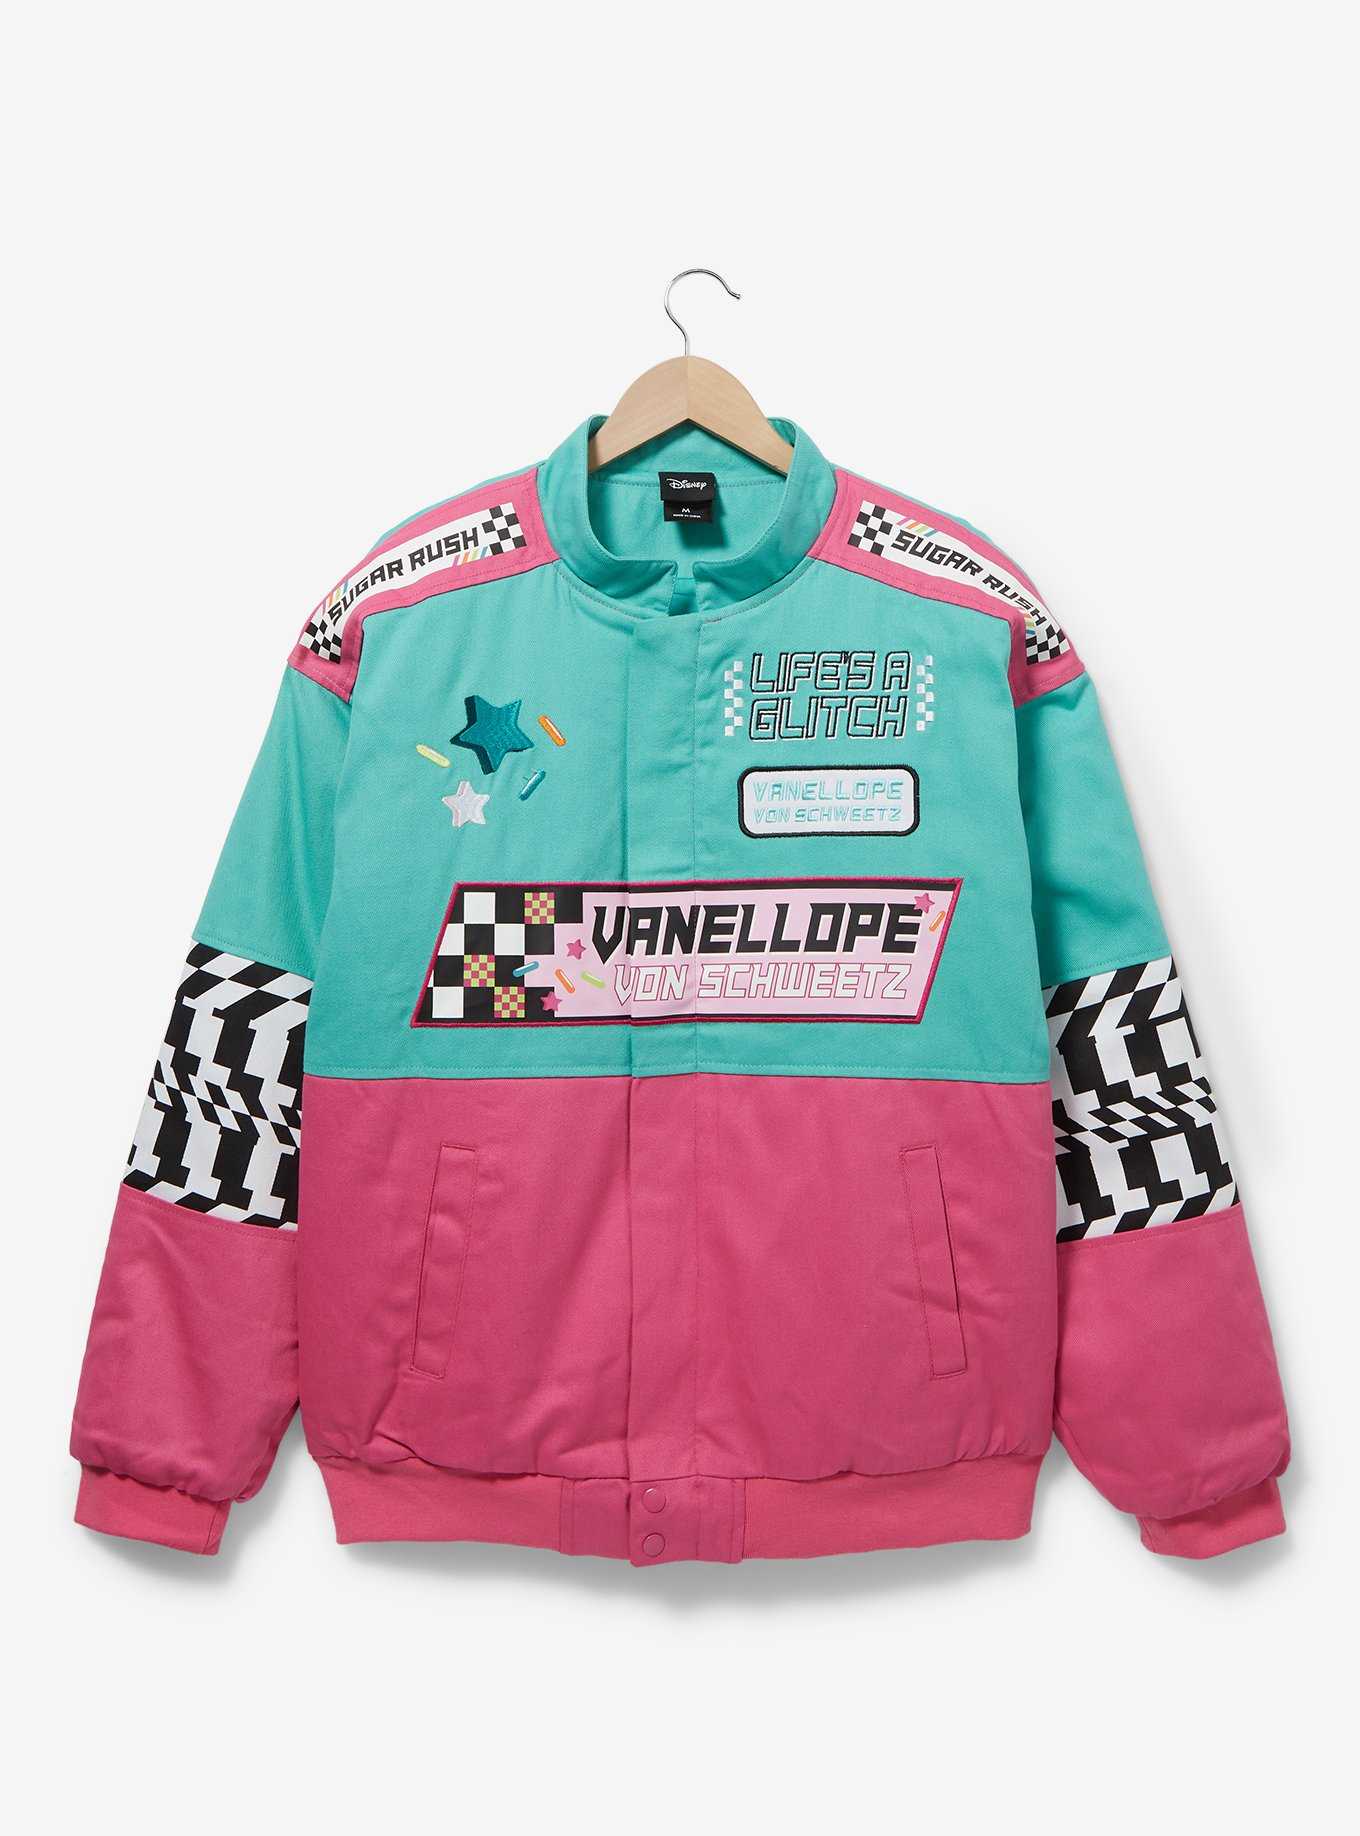 Disney Wreck-It Ralph Vanellope Von Schweetz Racing Jacket — BoxLunch Exclusive, , hi-res